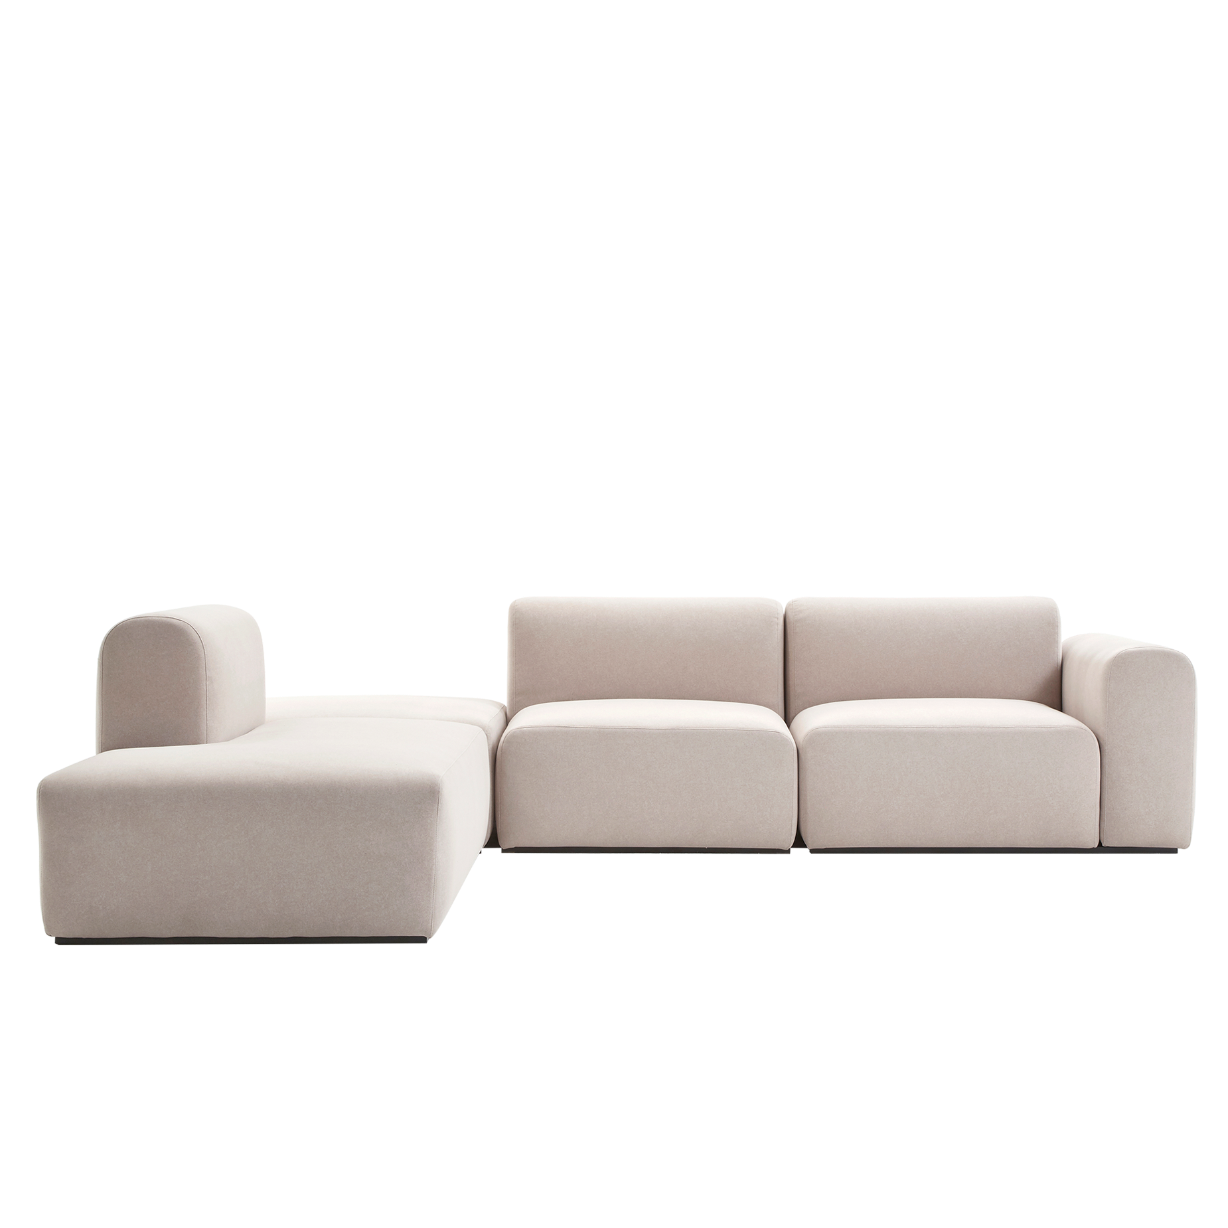 (주)도이치     DOICH ® Aquaclean PEN3 modular couch sofa  도이치 Pen3  4인 카우치 소파 ( 카우치+1인+1.5인) ) + 스툴 /(스페인 아쿠아클린)  [3주 주문제작]